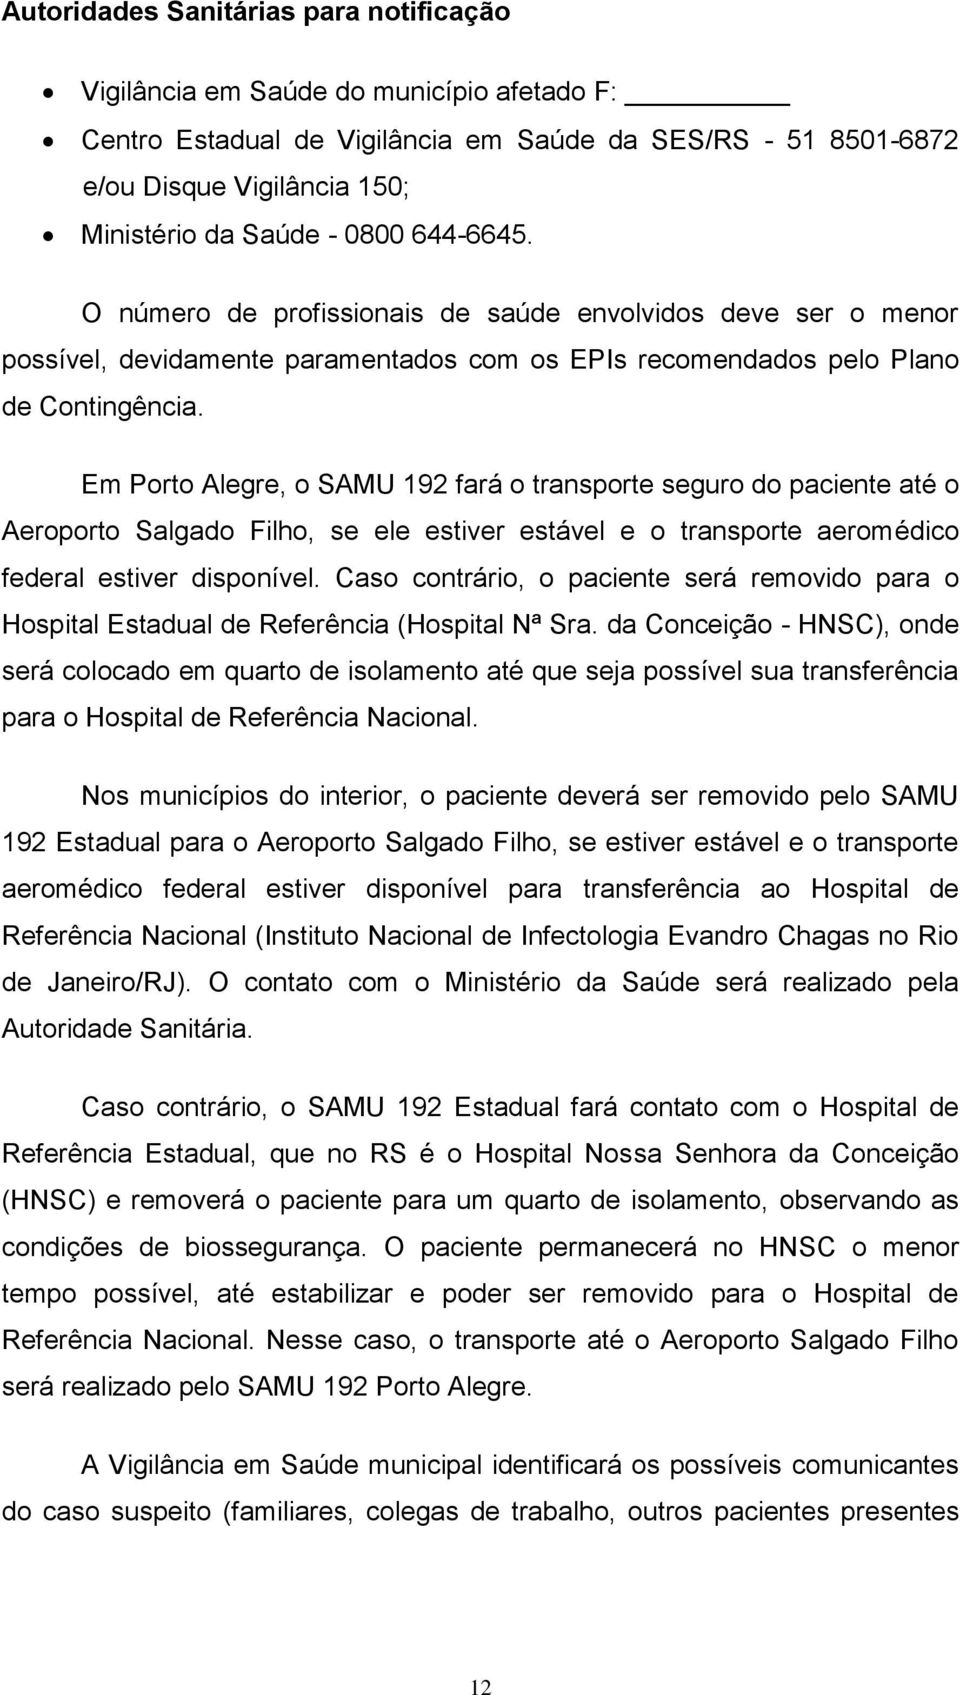 Em Porto Alegre, o SAMU 192 fará o transporte seguro do paciente até o Aeroporto Salgado Filho, se ele estiver estável e o transporte aeromédico federal estiver disponível.